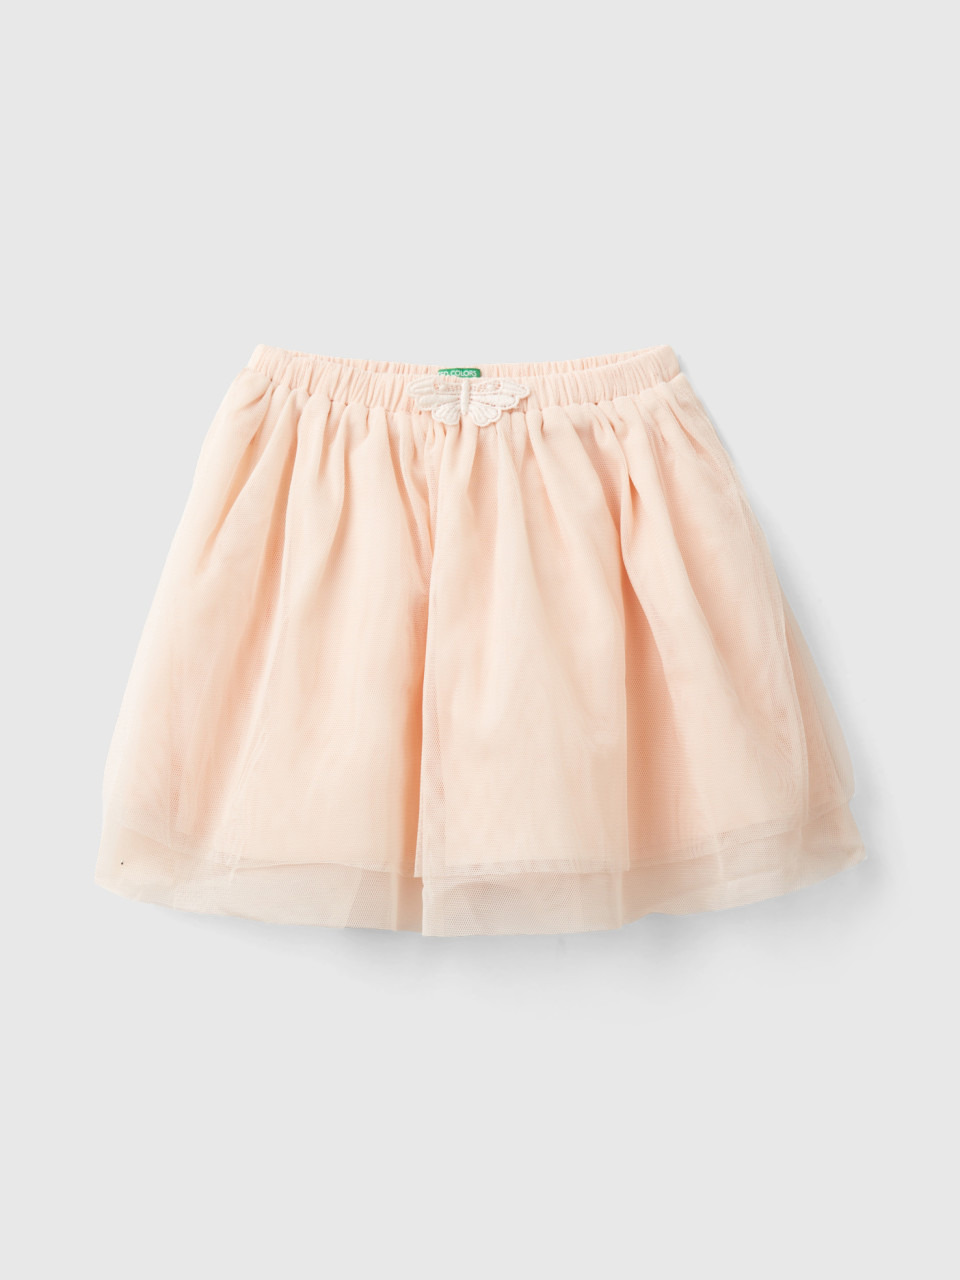 Benetton, Tulle Skirt, Peach, Kids